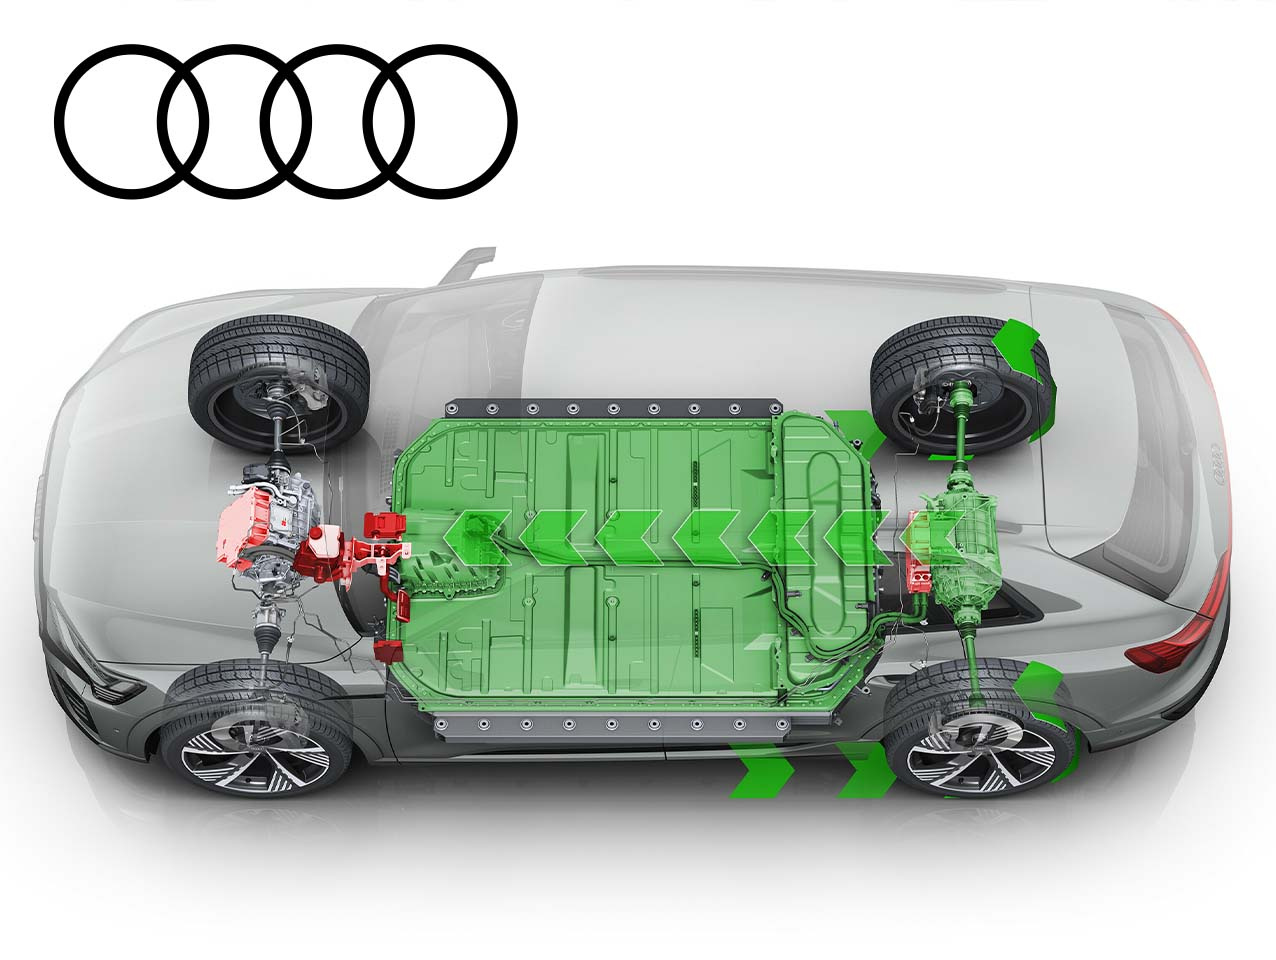 Auto elettrica: cosa succede alla tua Audi e-tron in caso di tamponamenti o urti